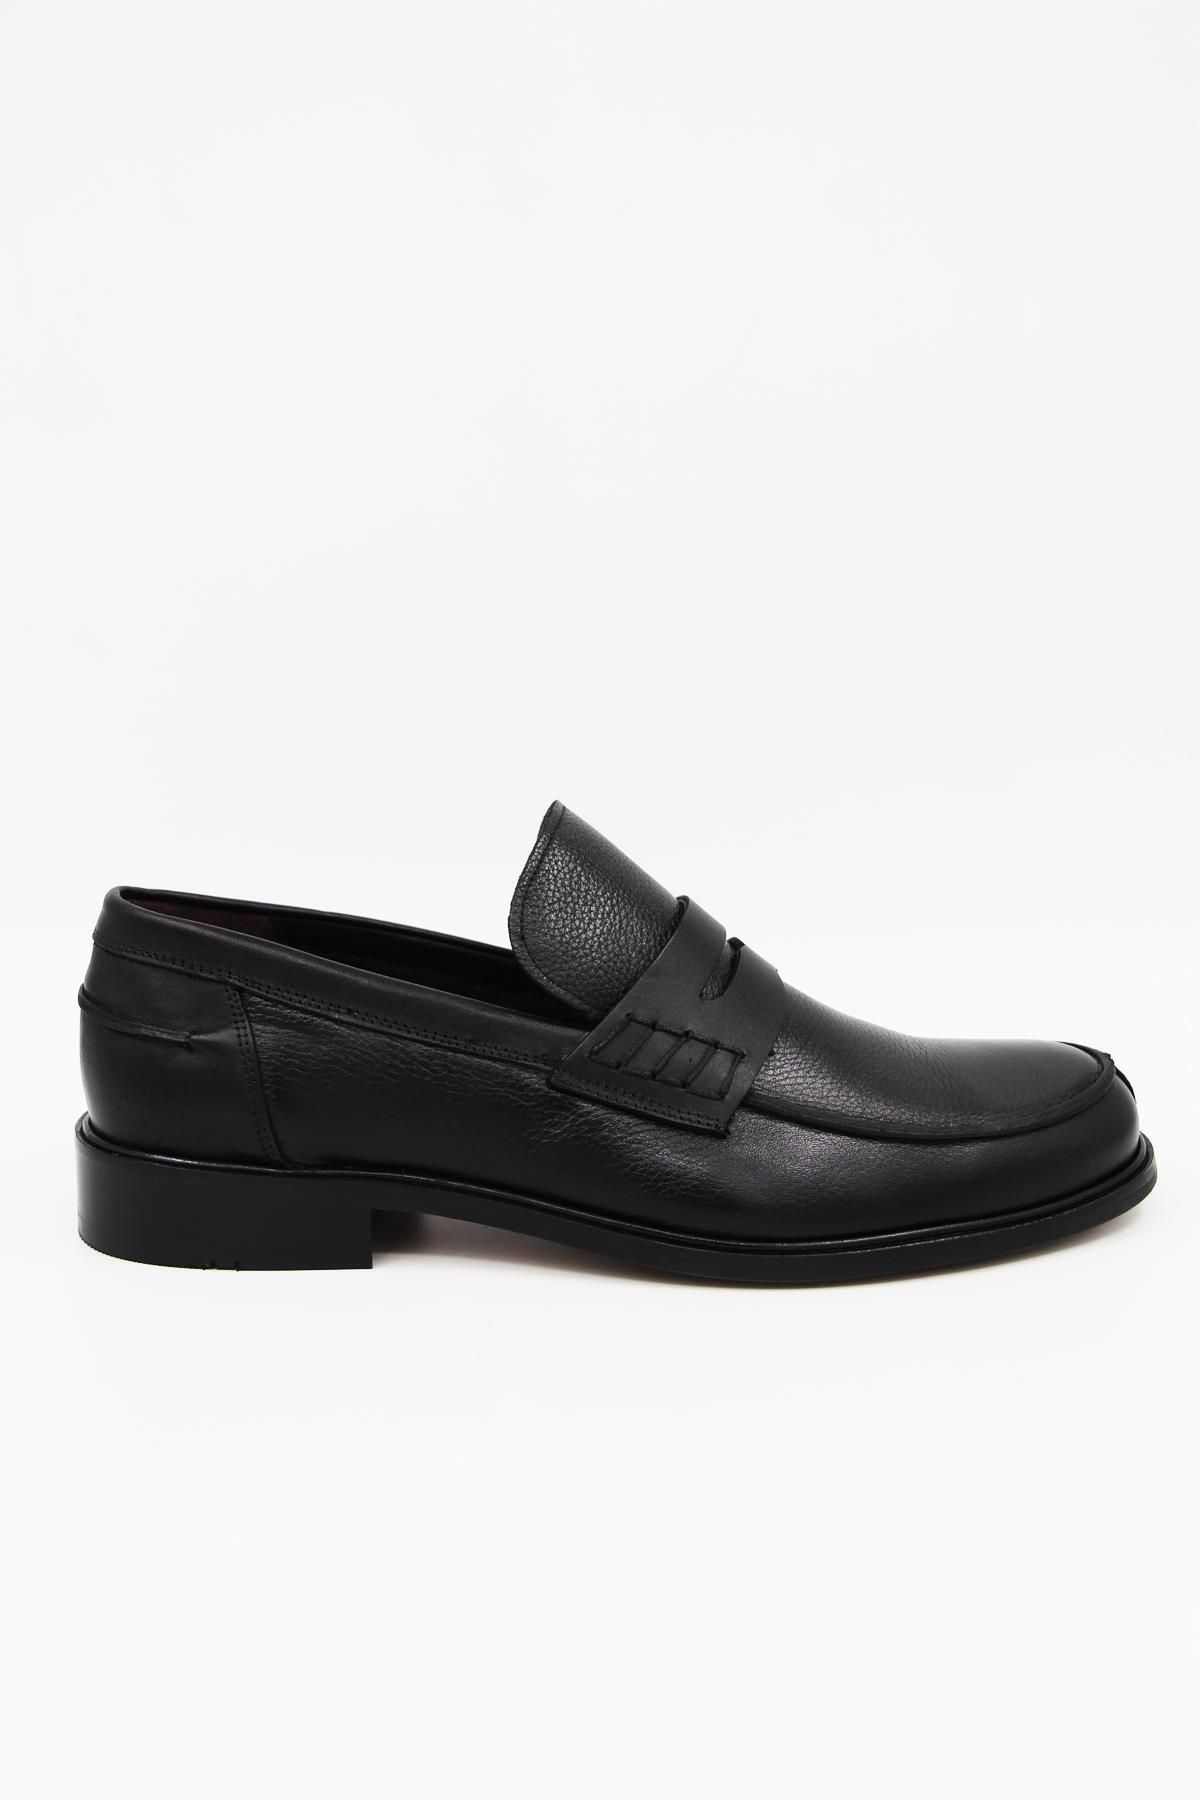 DANACI Danacı 8004 Erkek Klasik Ayakkabı - Siyah